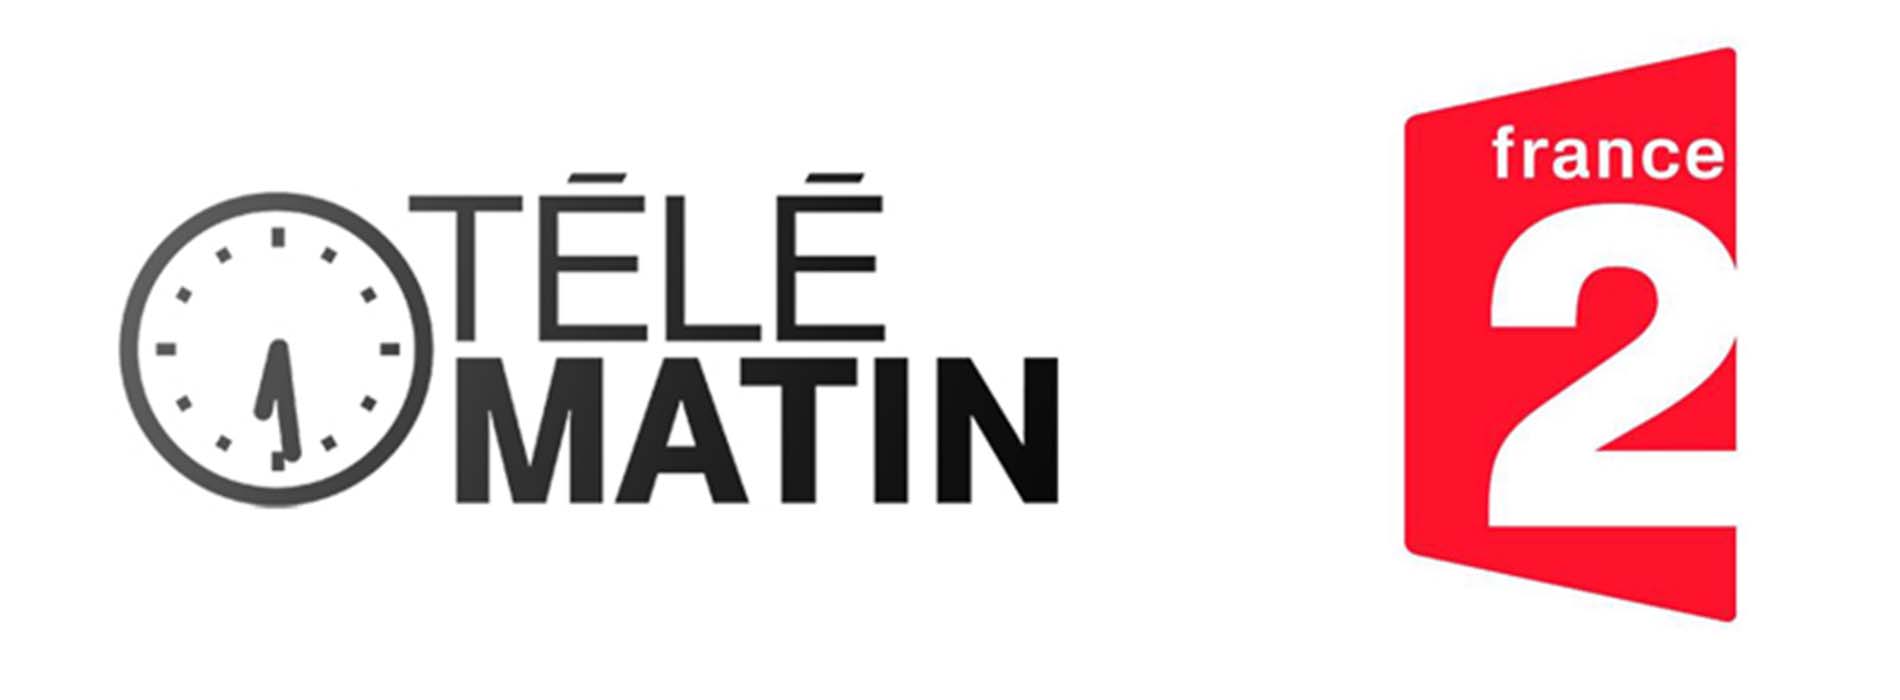 logo télématin reportage